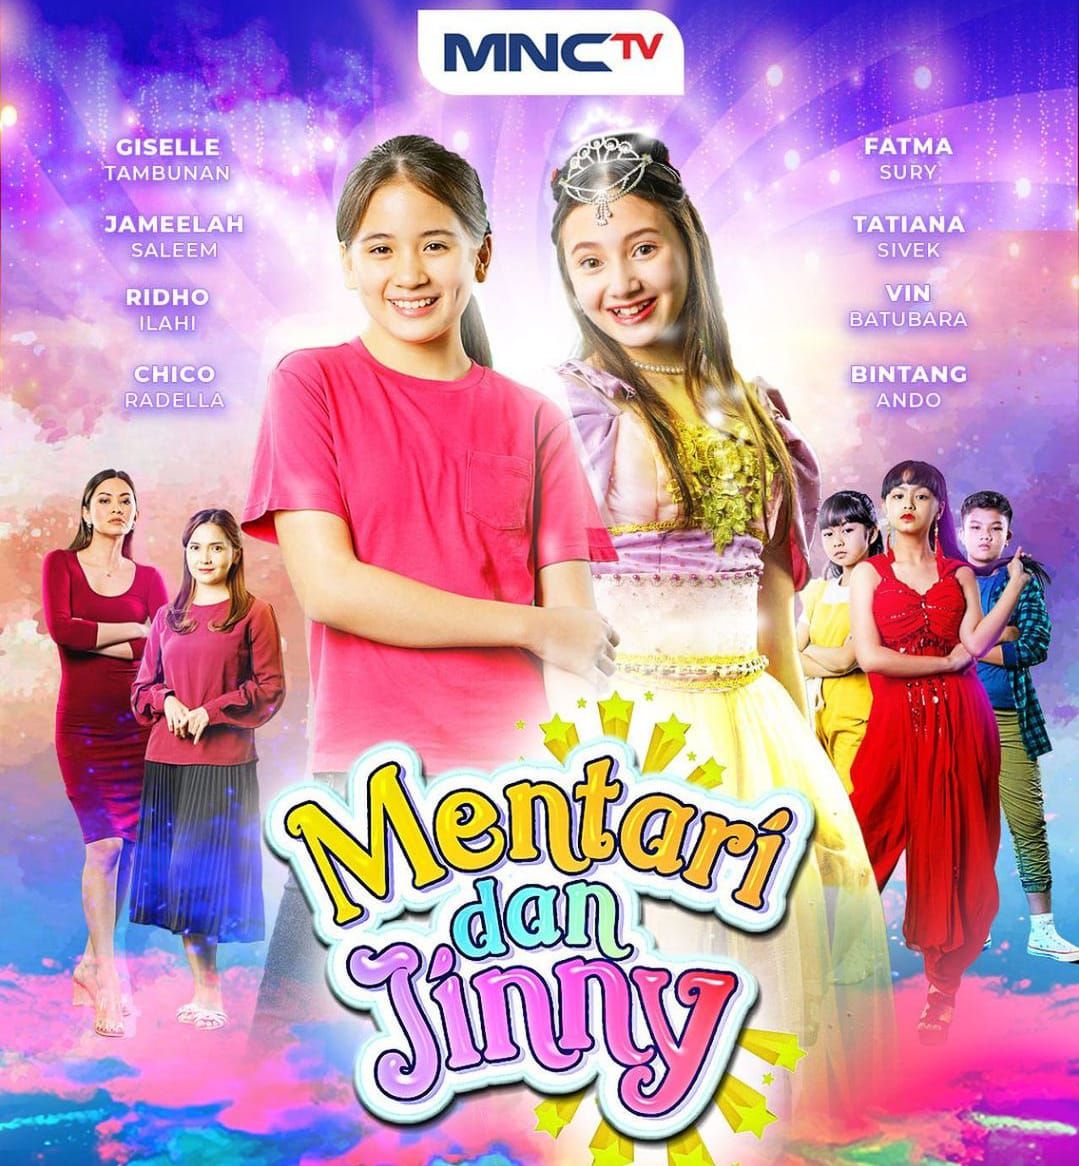 Jadwal Acara MNCTV Hari Ini 7 Desember 2022: Ikuti Lanjutan Mentari Dan Jinny, Family 100, hingga Blockbuster